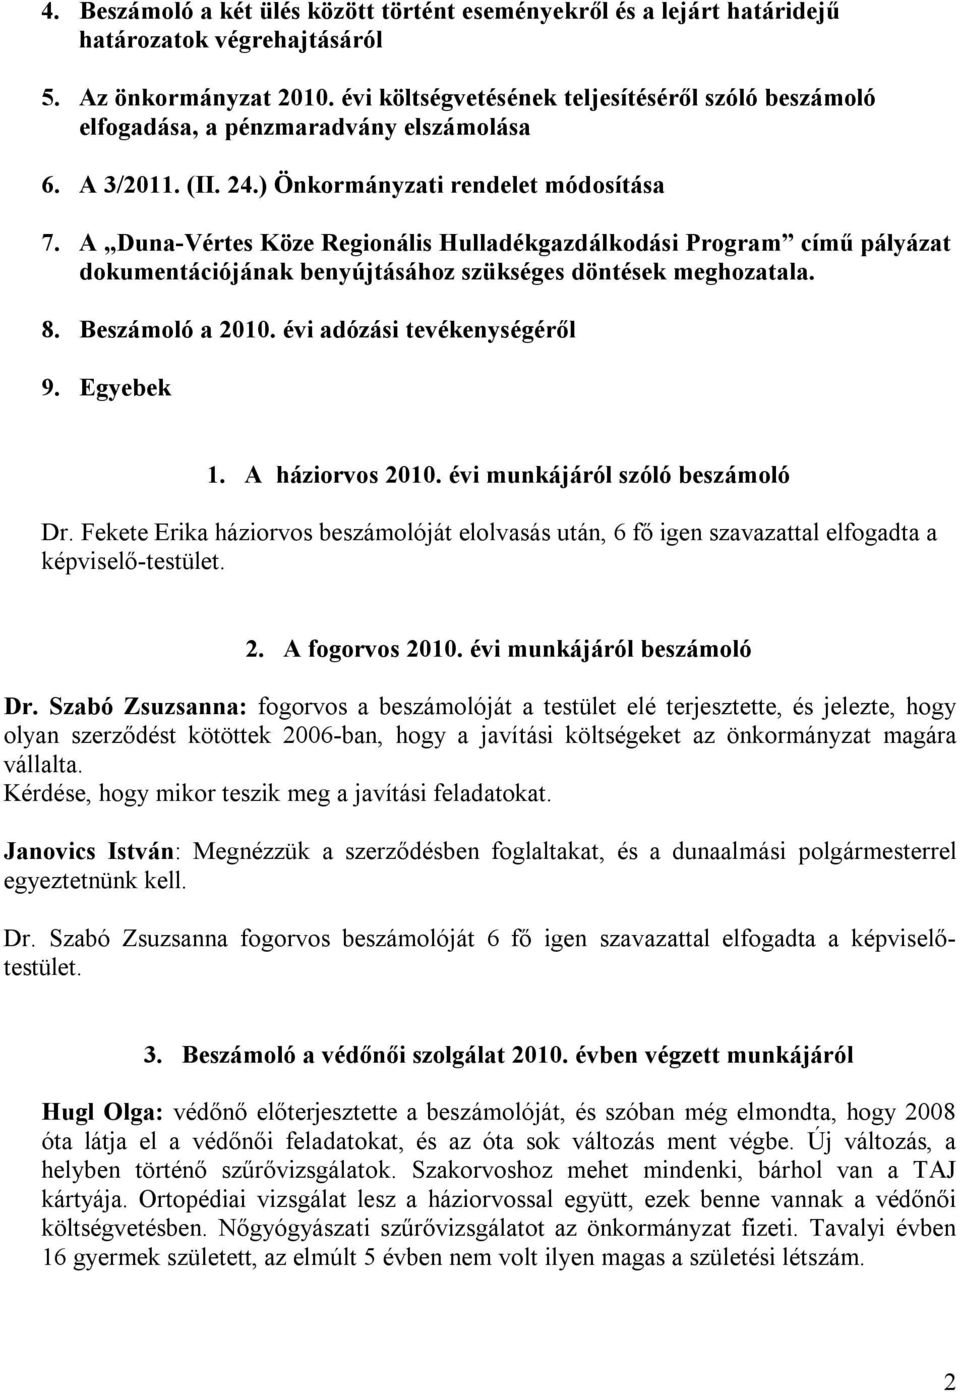 A Duna-Vértes Köze Regionális Hulladékgazdálkodási Program című pályázat dokumentációjának benyújtásához szükséges döntések meghozatala. 8. Beszámoló a 2010. évi adózási tevékenységéről 9. Egyebek 1.